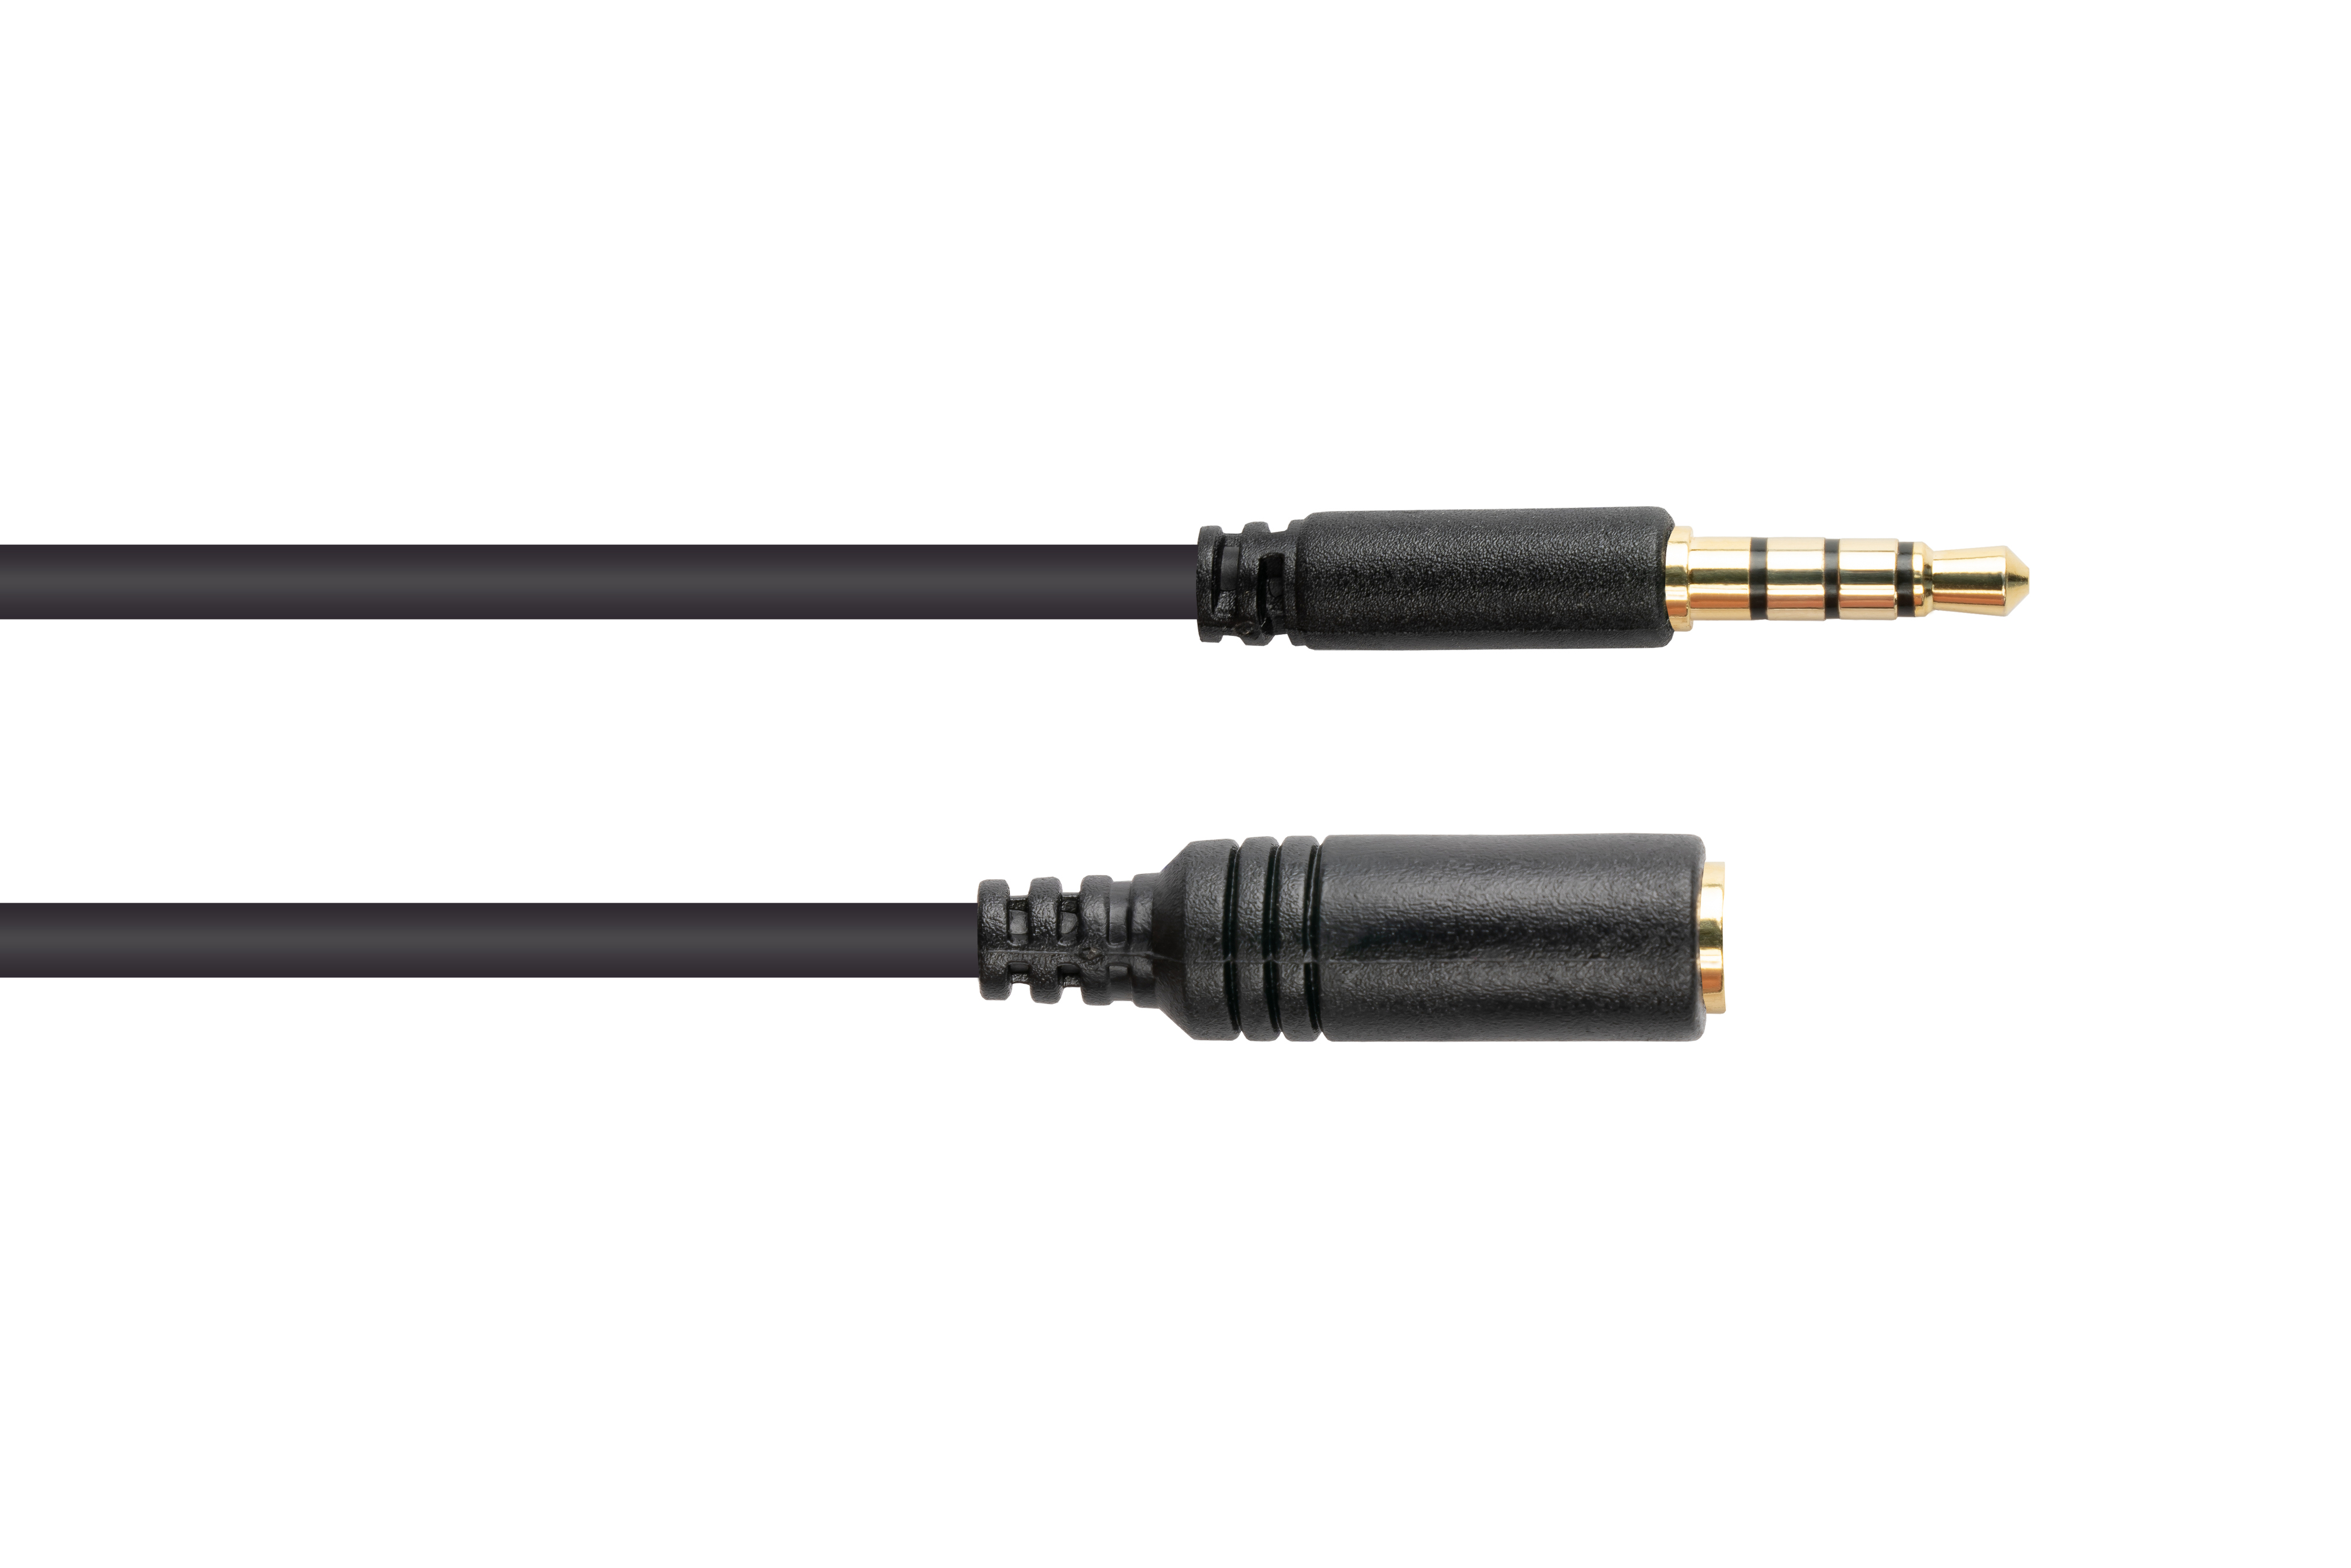 GOOD CONNECTIONS Kontakte, (4polig), 3,5mm, schwarz CU, an Buchse Klinkenverlängerung Audio vergoldete Stecker